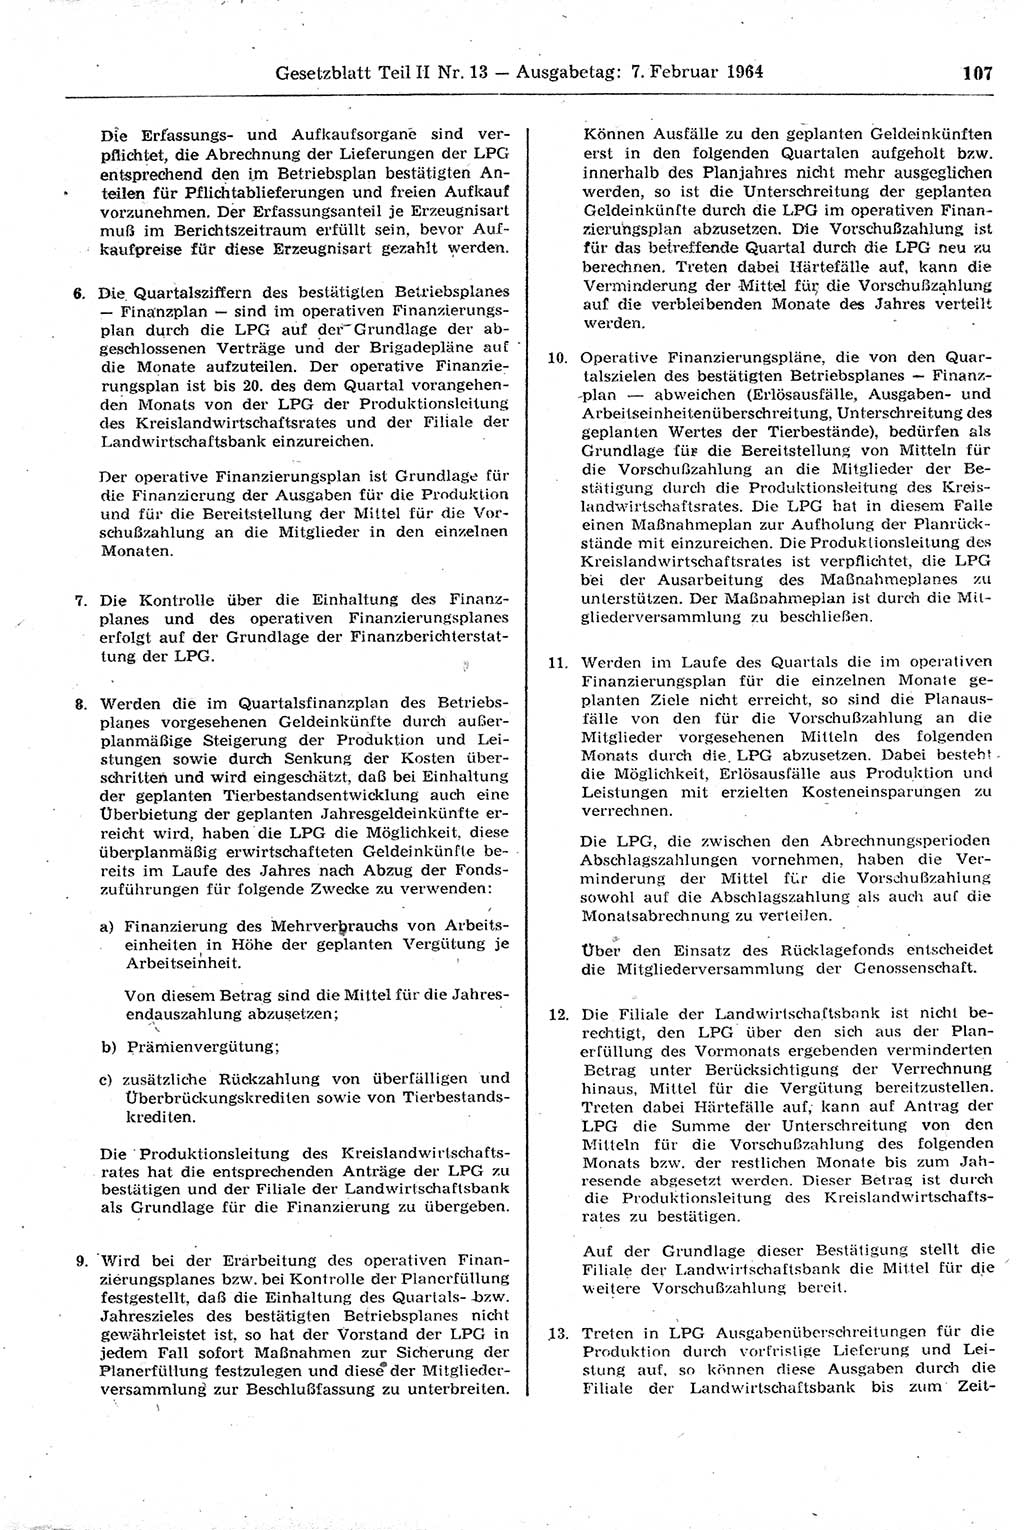 Gesetzblatt (GBl.) der Deutschen Demokratischen Republik (DDR) Teil ⅠⅠ 1964, Seite 107 (GBl. DDR ⅠⅠ 1964, S. 107)